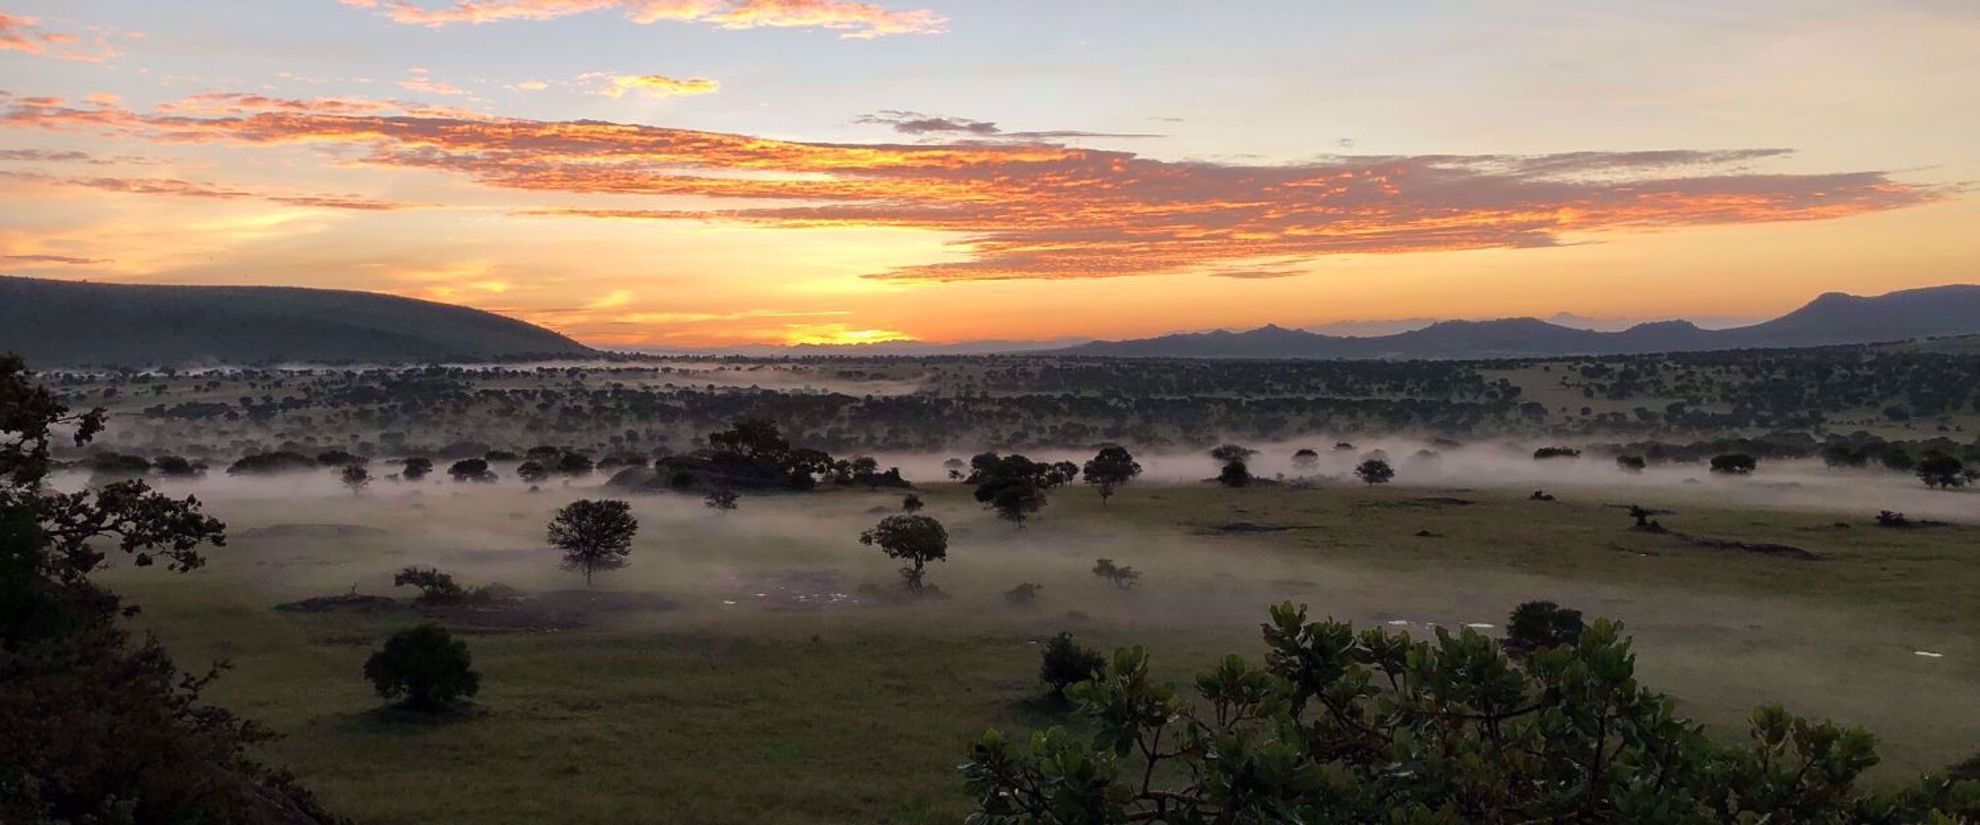 Vibrant Tanzanian sunset